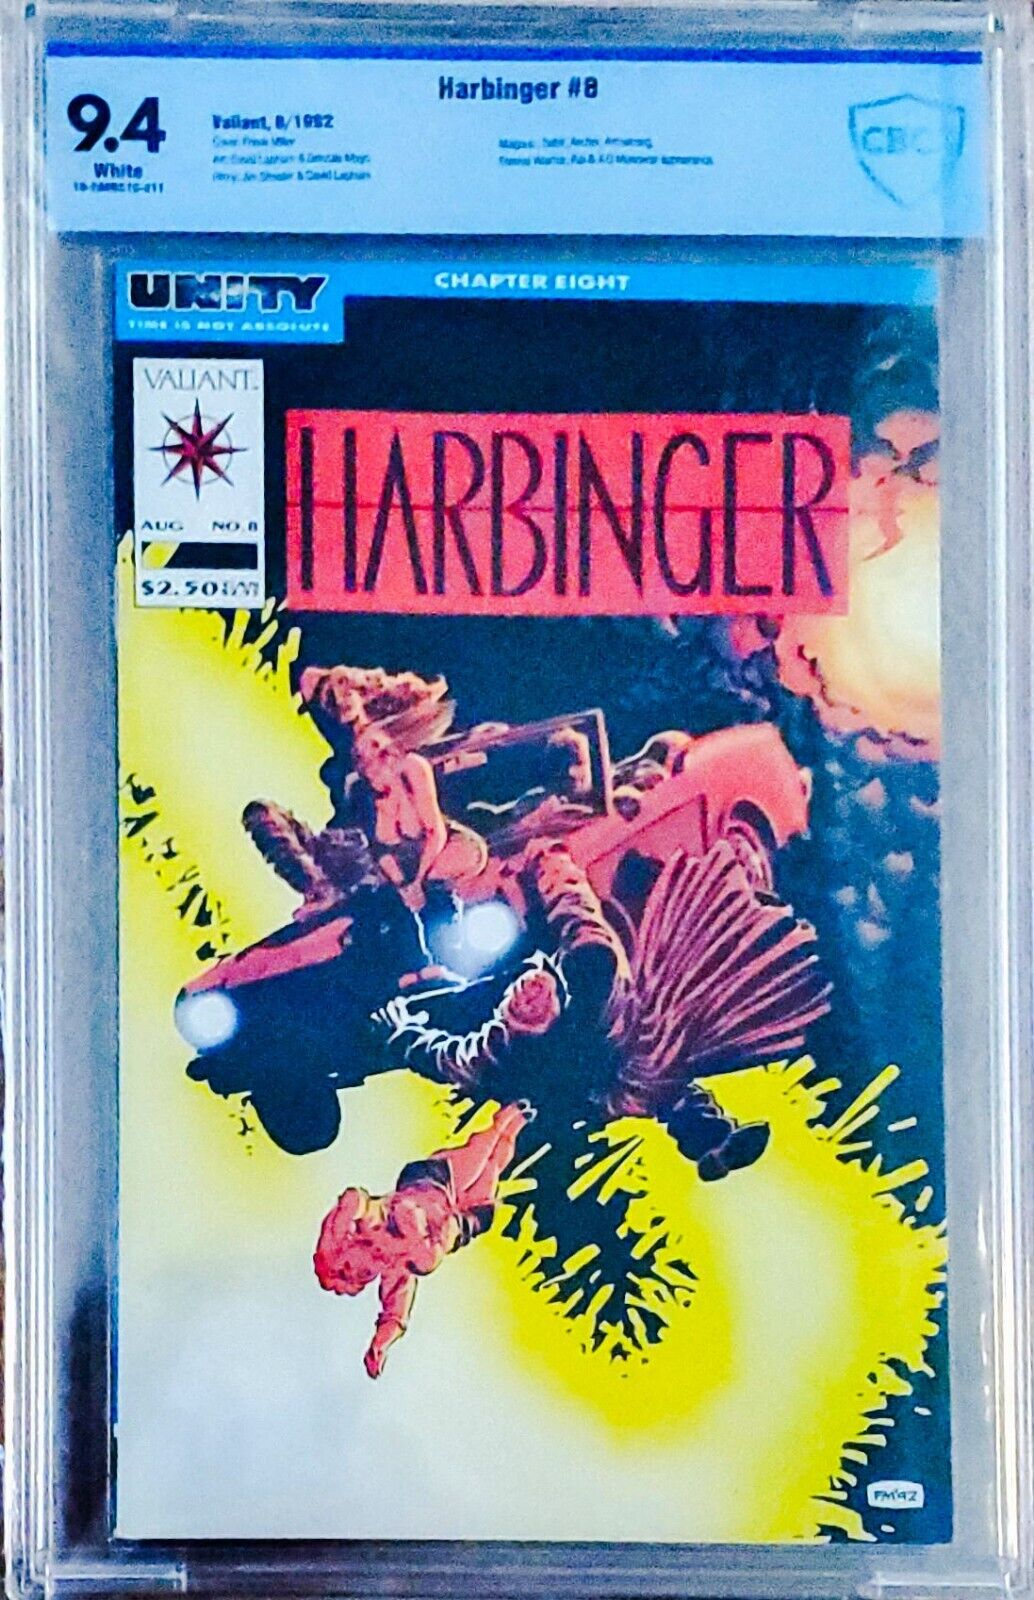 Harbinger #8 CBCS 9.4 Frank Miller Cover